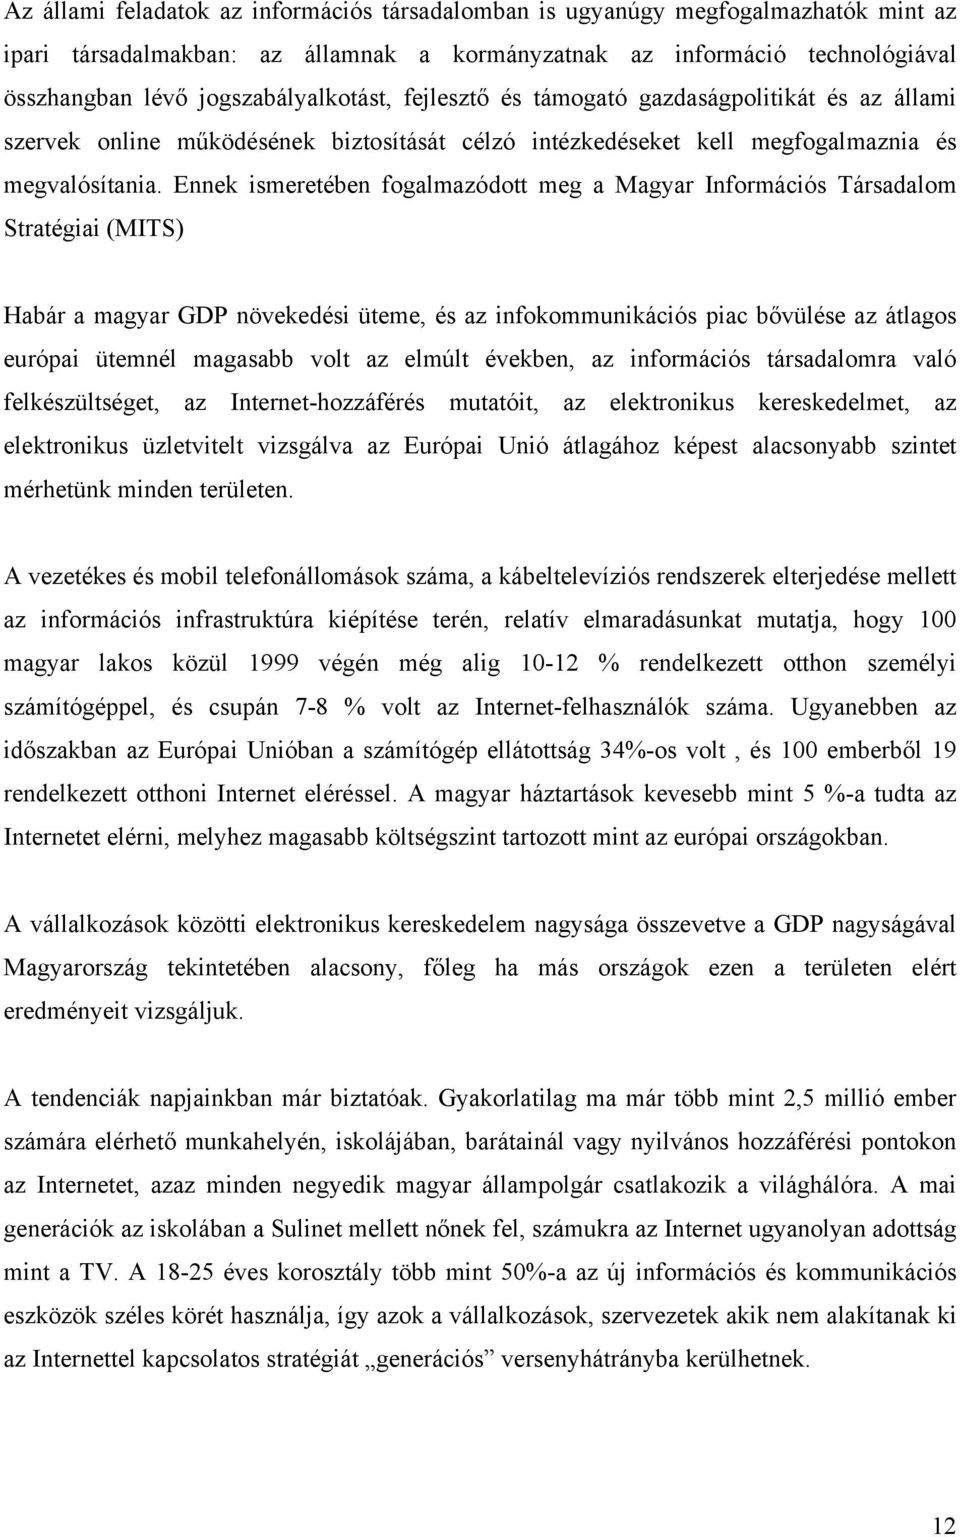 Ennek ismeretében fogalmazódott meg a Magyar Információs Társadalom Stratégiai (MITS) Habár a magyar GDP növekedési üteme, és az infokommunikációs piac bővülése az átlagos európai ütemnél magasabb